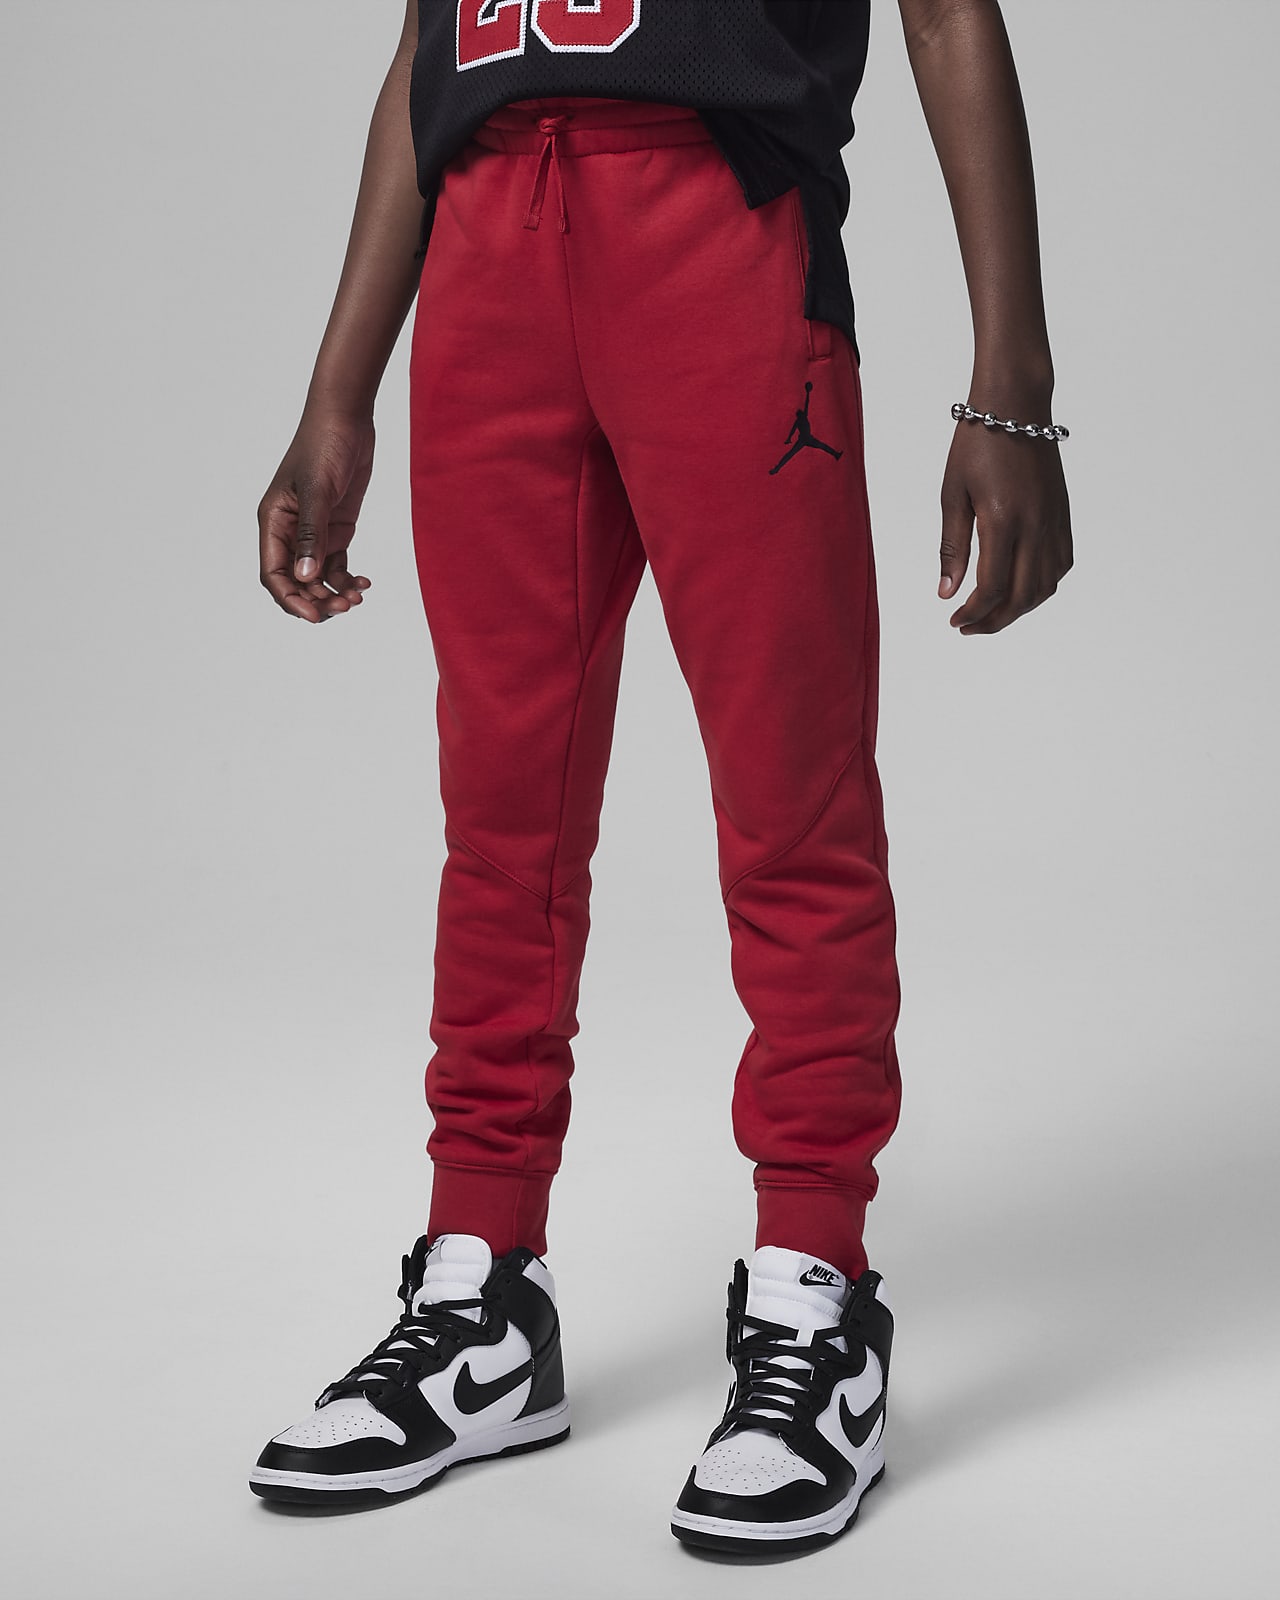 Nike PSG Jordan M DV0621 010 pants – Your Sports Performance